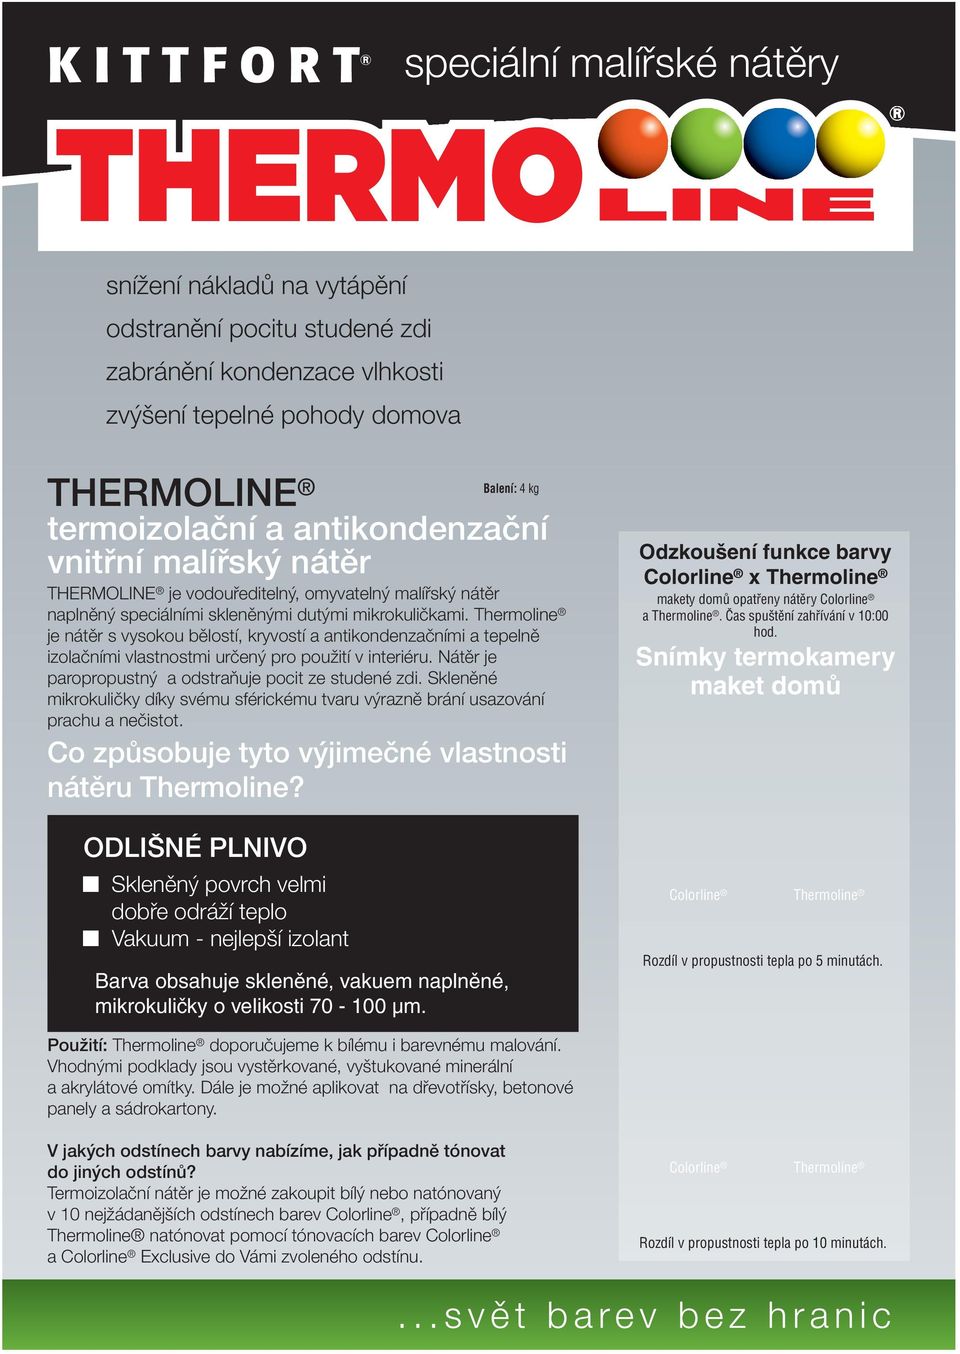 Thermoline je nátěr s vysokou bělostí, kryvostí a antikondenzačními a tepelně izolačními vlastnostmi určený pro použití v interiéru. Nátěr je paropropustný a odstraňuje pocit ze studené zdi.